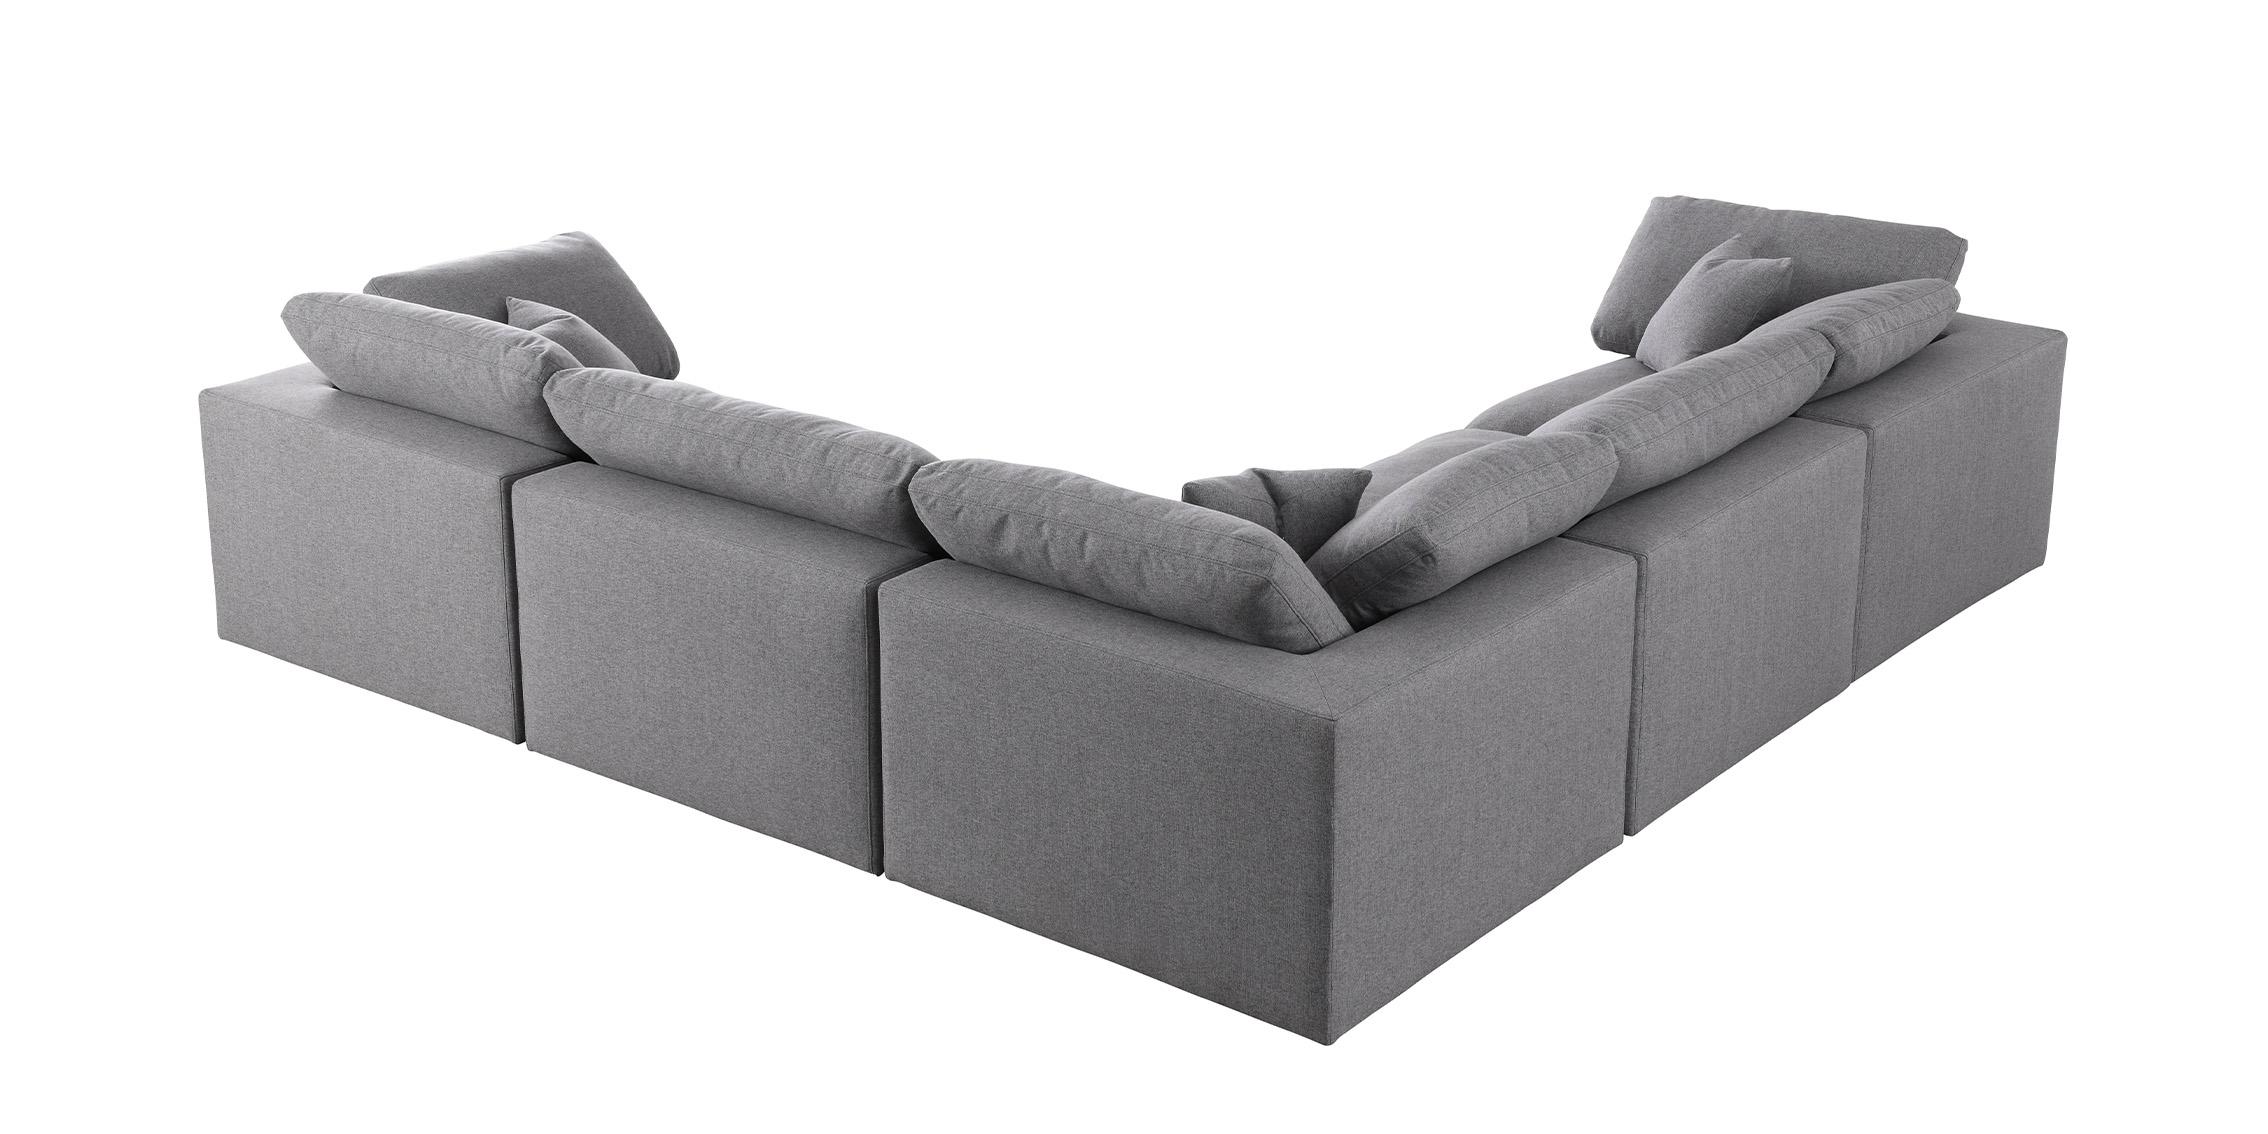 

    
Meridian Furniture SERENE601Grey-Sec5C Modular Sectional Gray 601Grey-Sec5C
